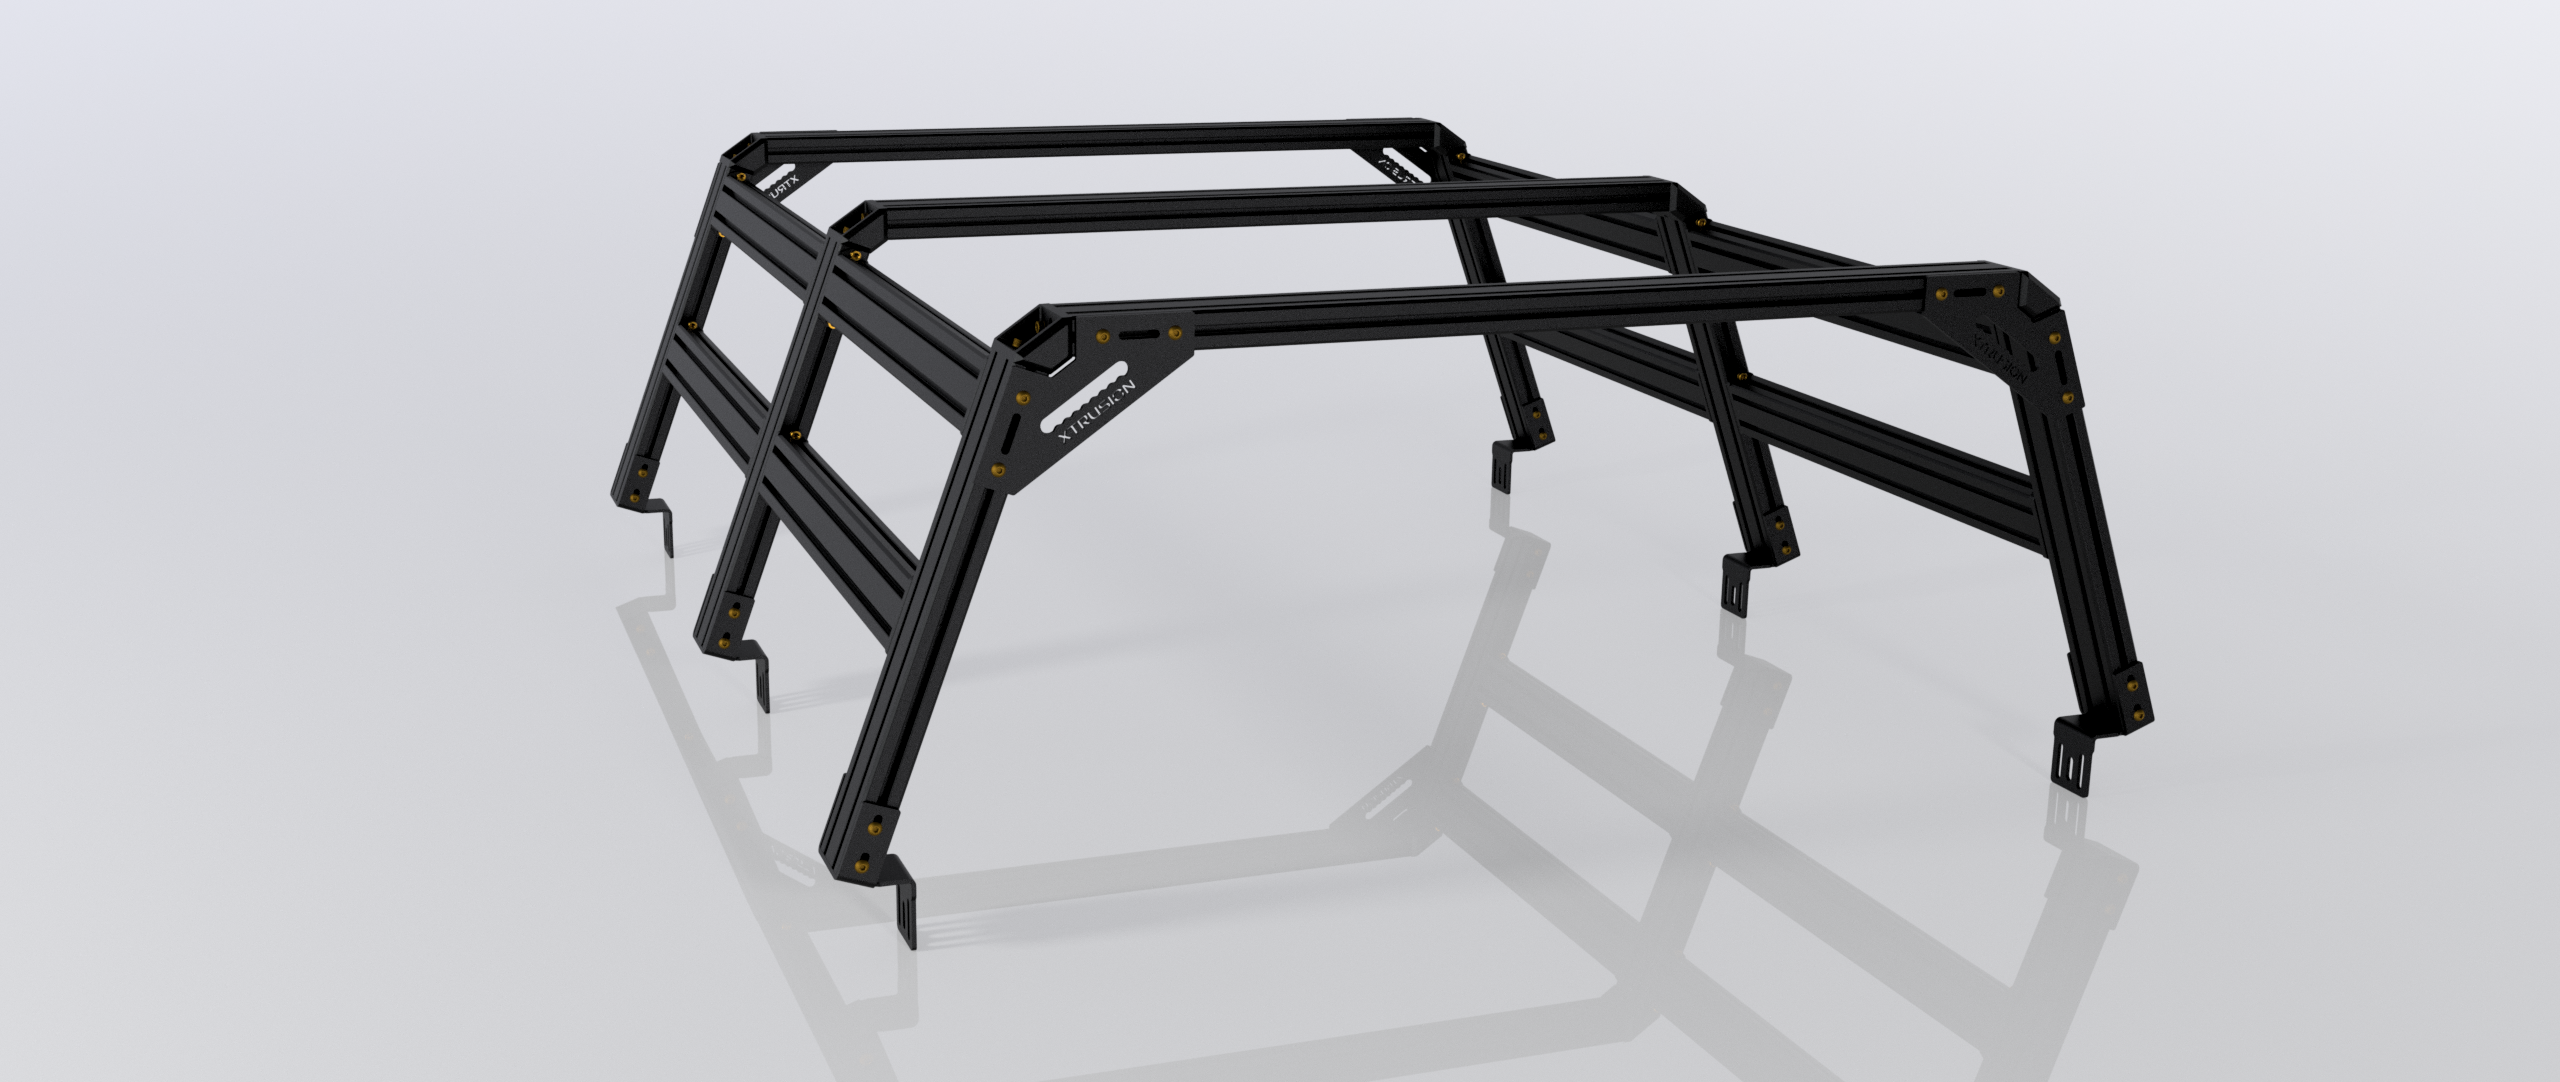 XTR3 Bed Rack for Silverado & Sierra 2500/3500HD